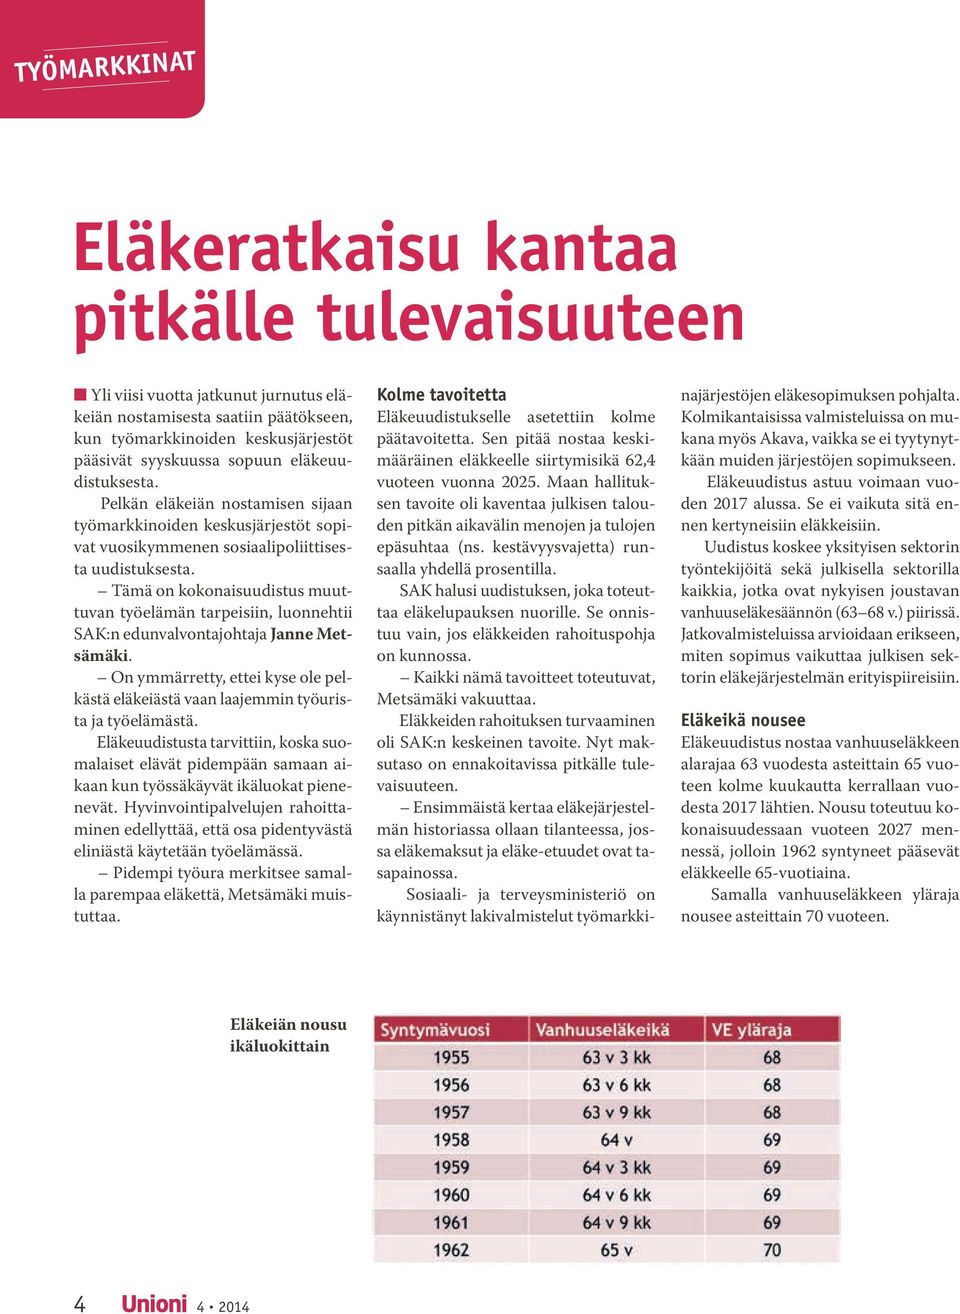 Tämä on kokonaisuudistus muuttuvan työelämän tarpeisiin, luonnehtii SAK:n edunvalvontajohtaja Janne Metsämäki.